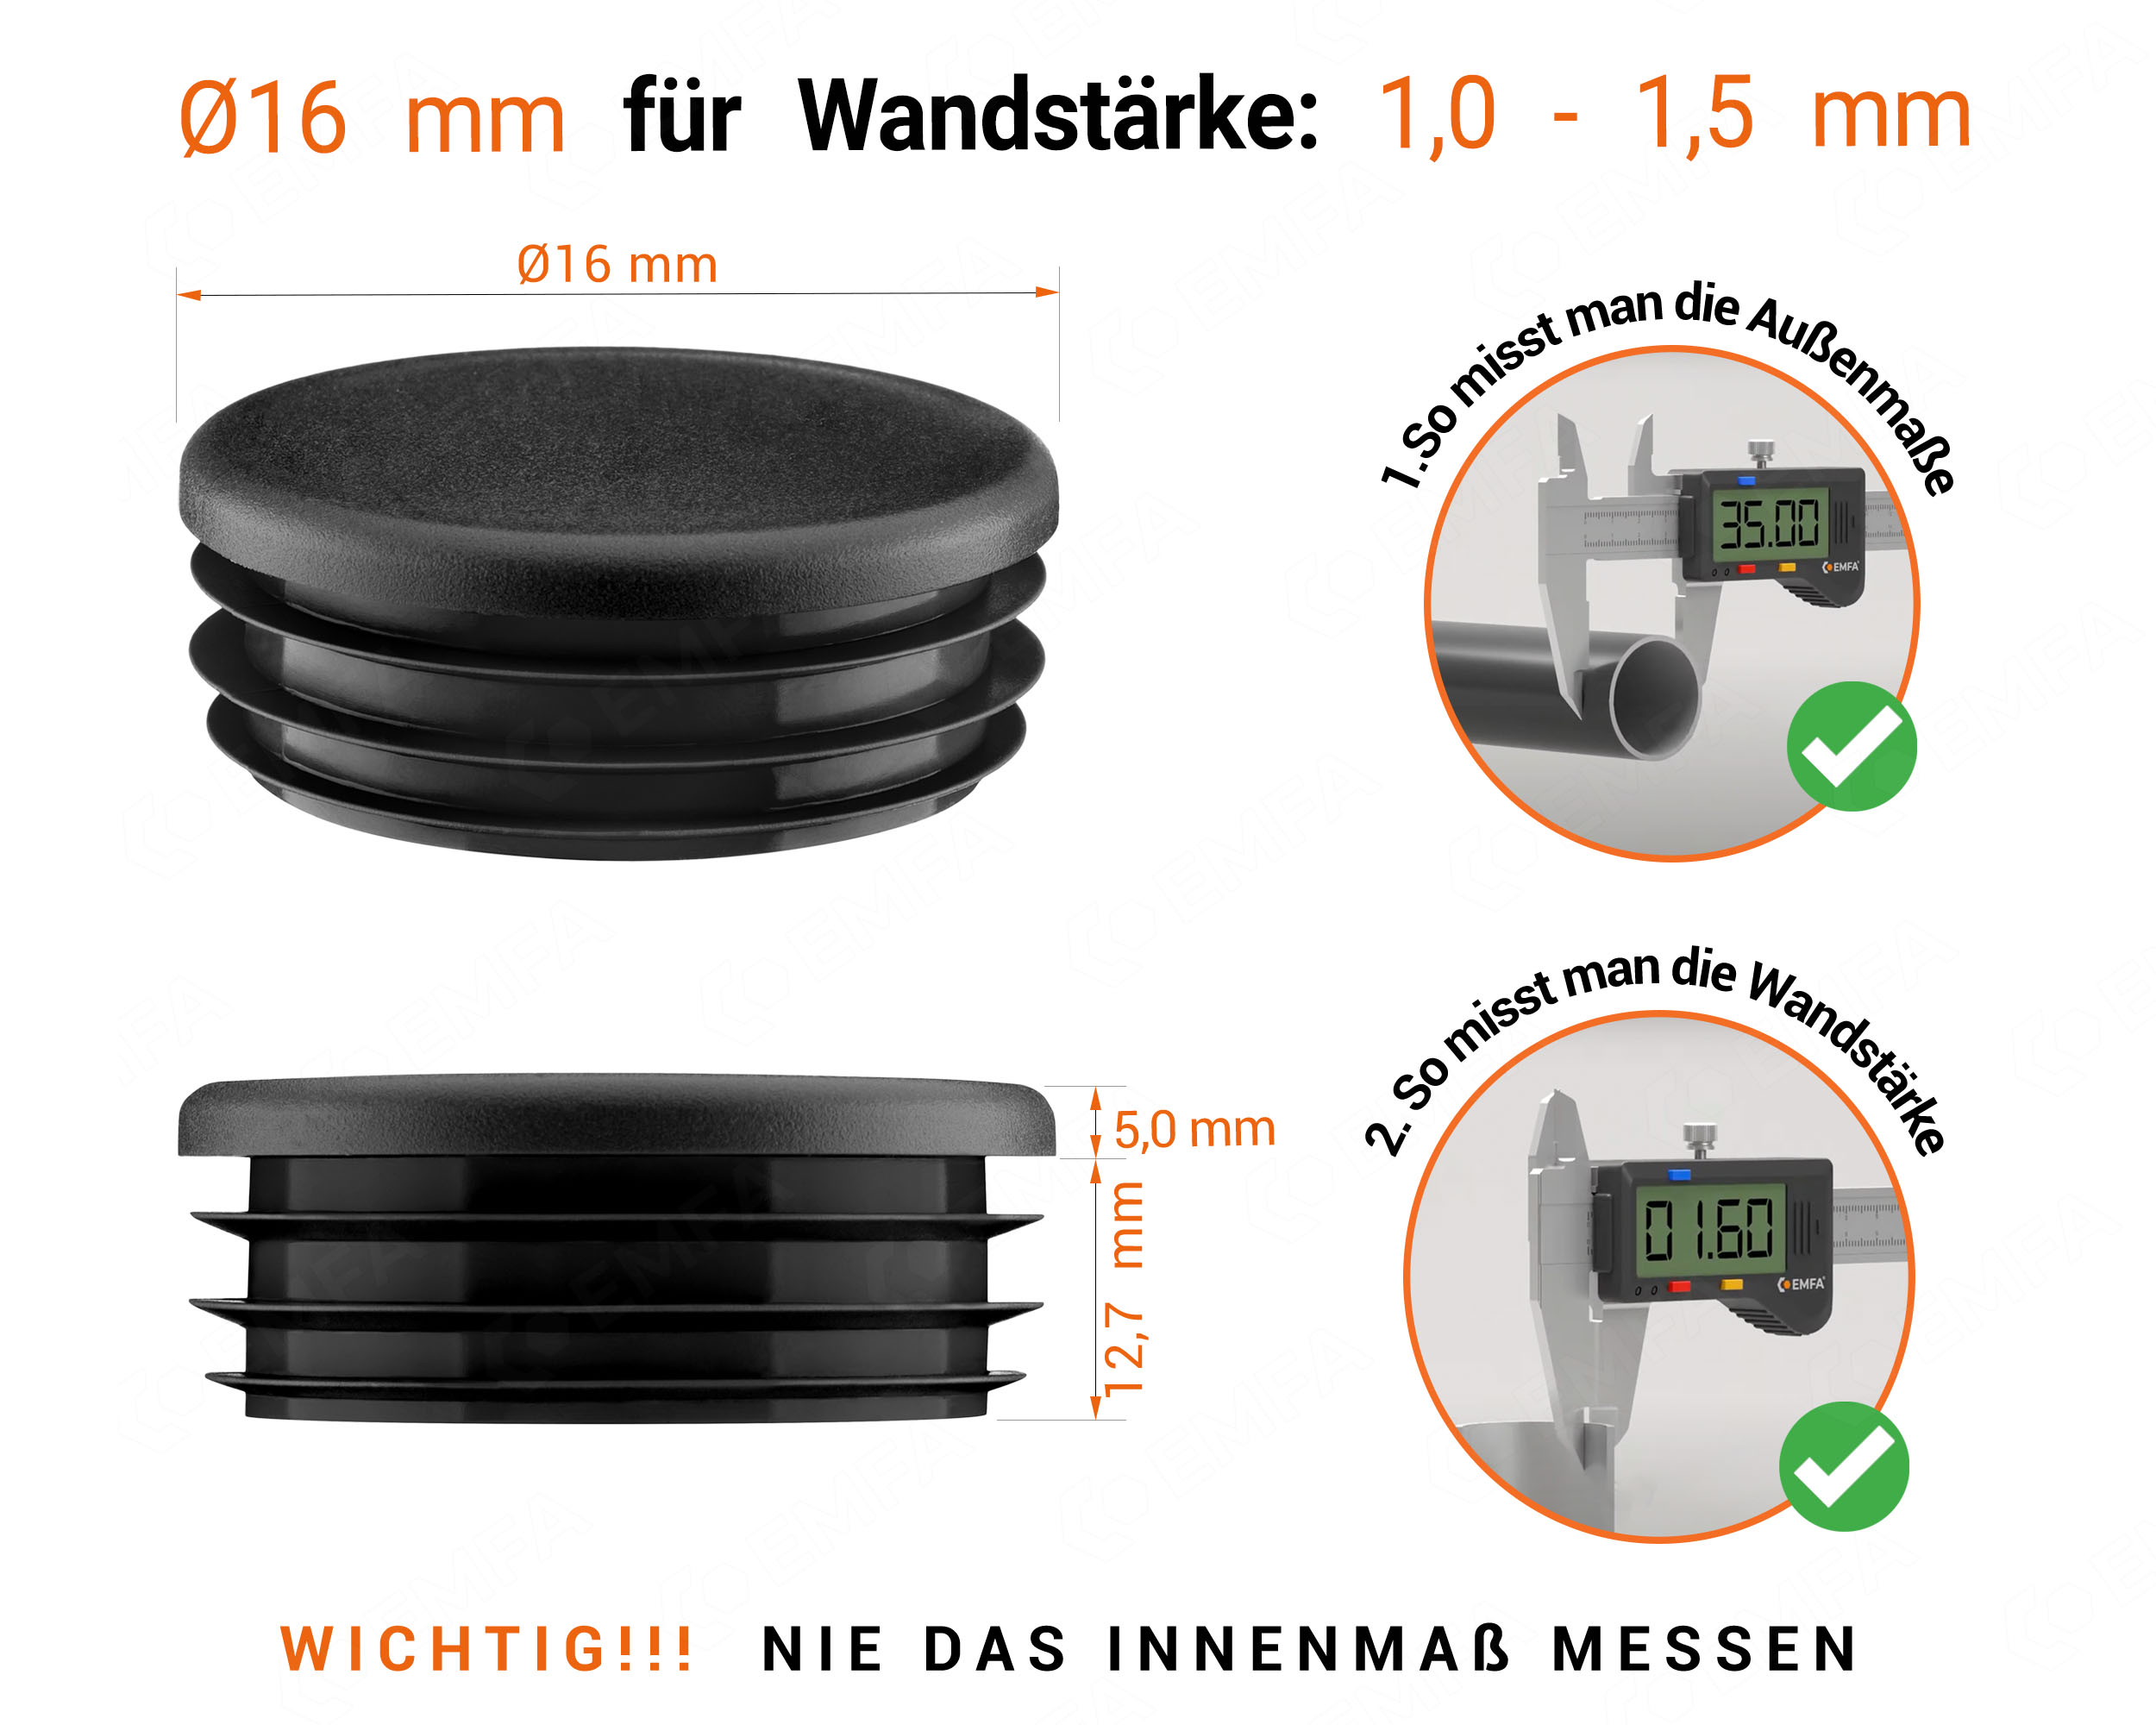 Schwarze Endkappe für Rundrohre in der Größe 16 mm mit technischen Abmessungen und Anleitung für korrekte Messung